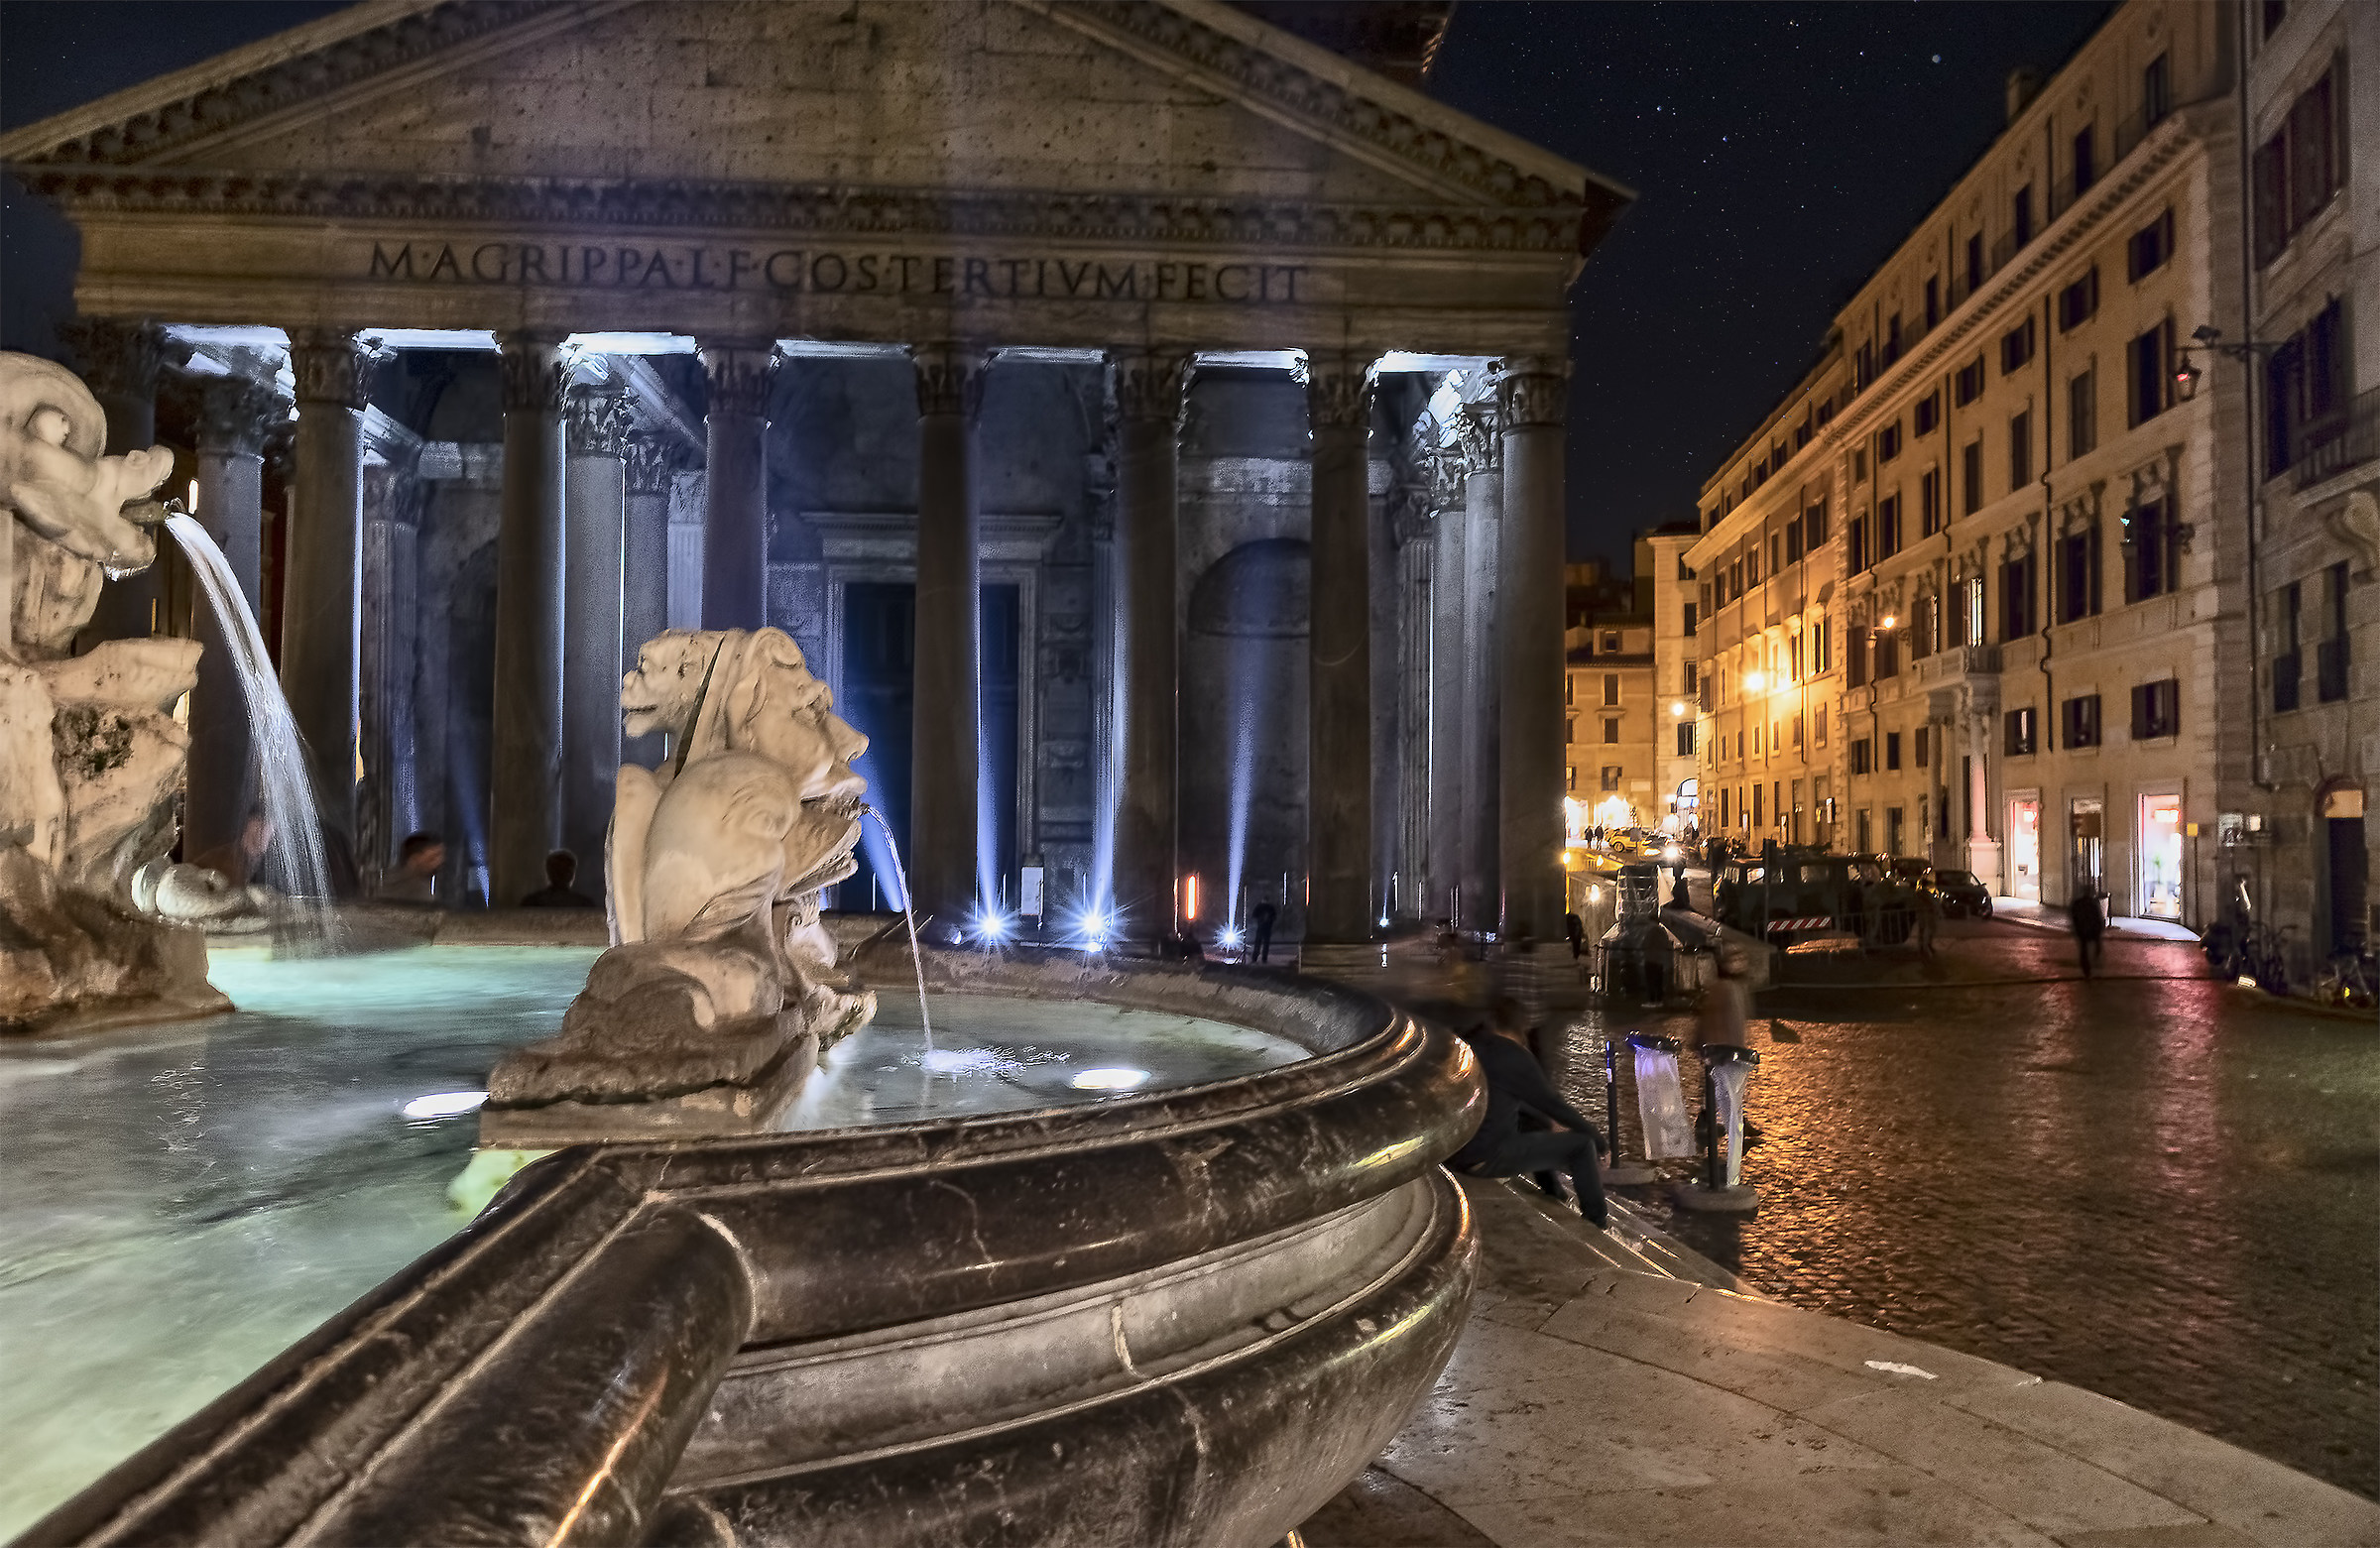 The Pantheon at night...